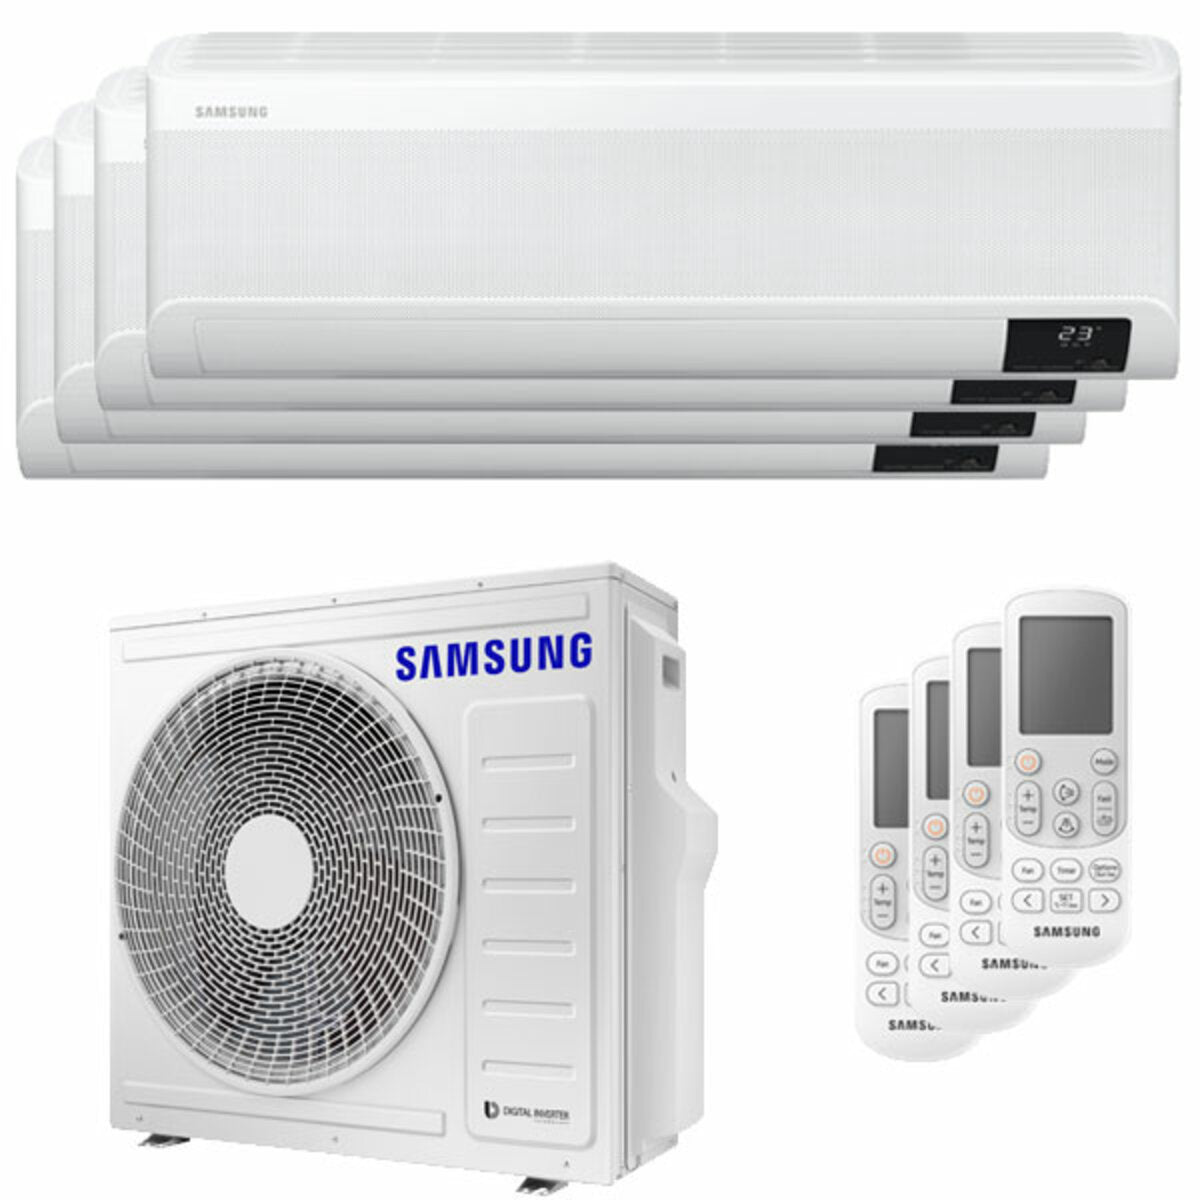 Samsung windfreie Avant Klimaanlage Quadri Split 7000 + 7000 + 7000 + 7000 BTU Inverter A++ Wifi Außengerät 8,0 kW